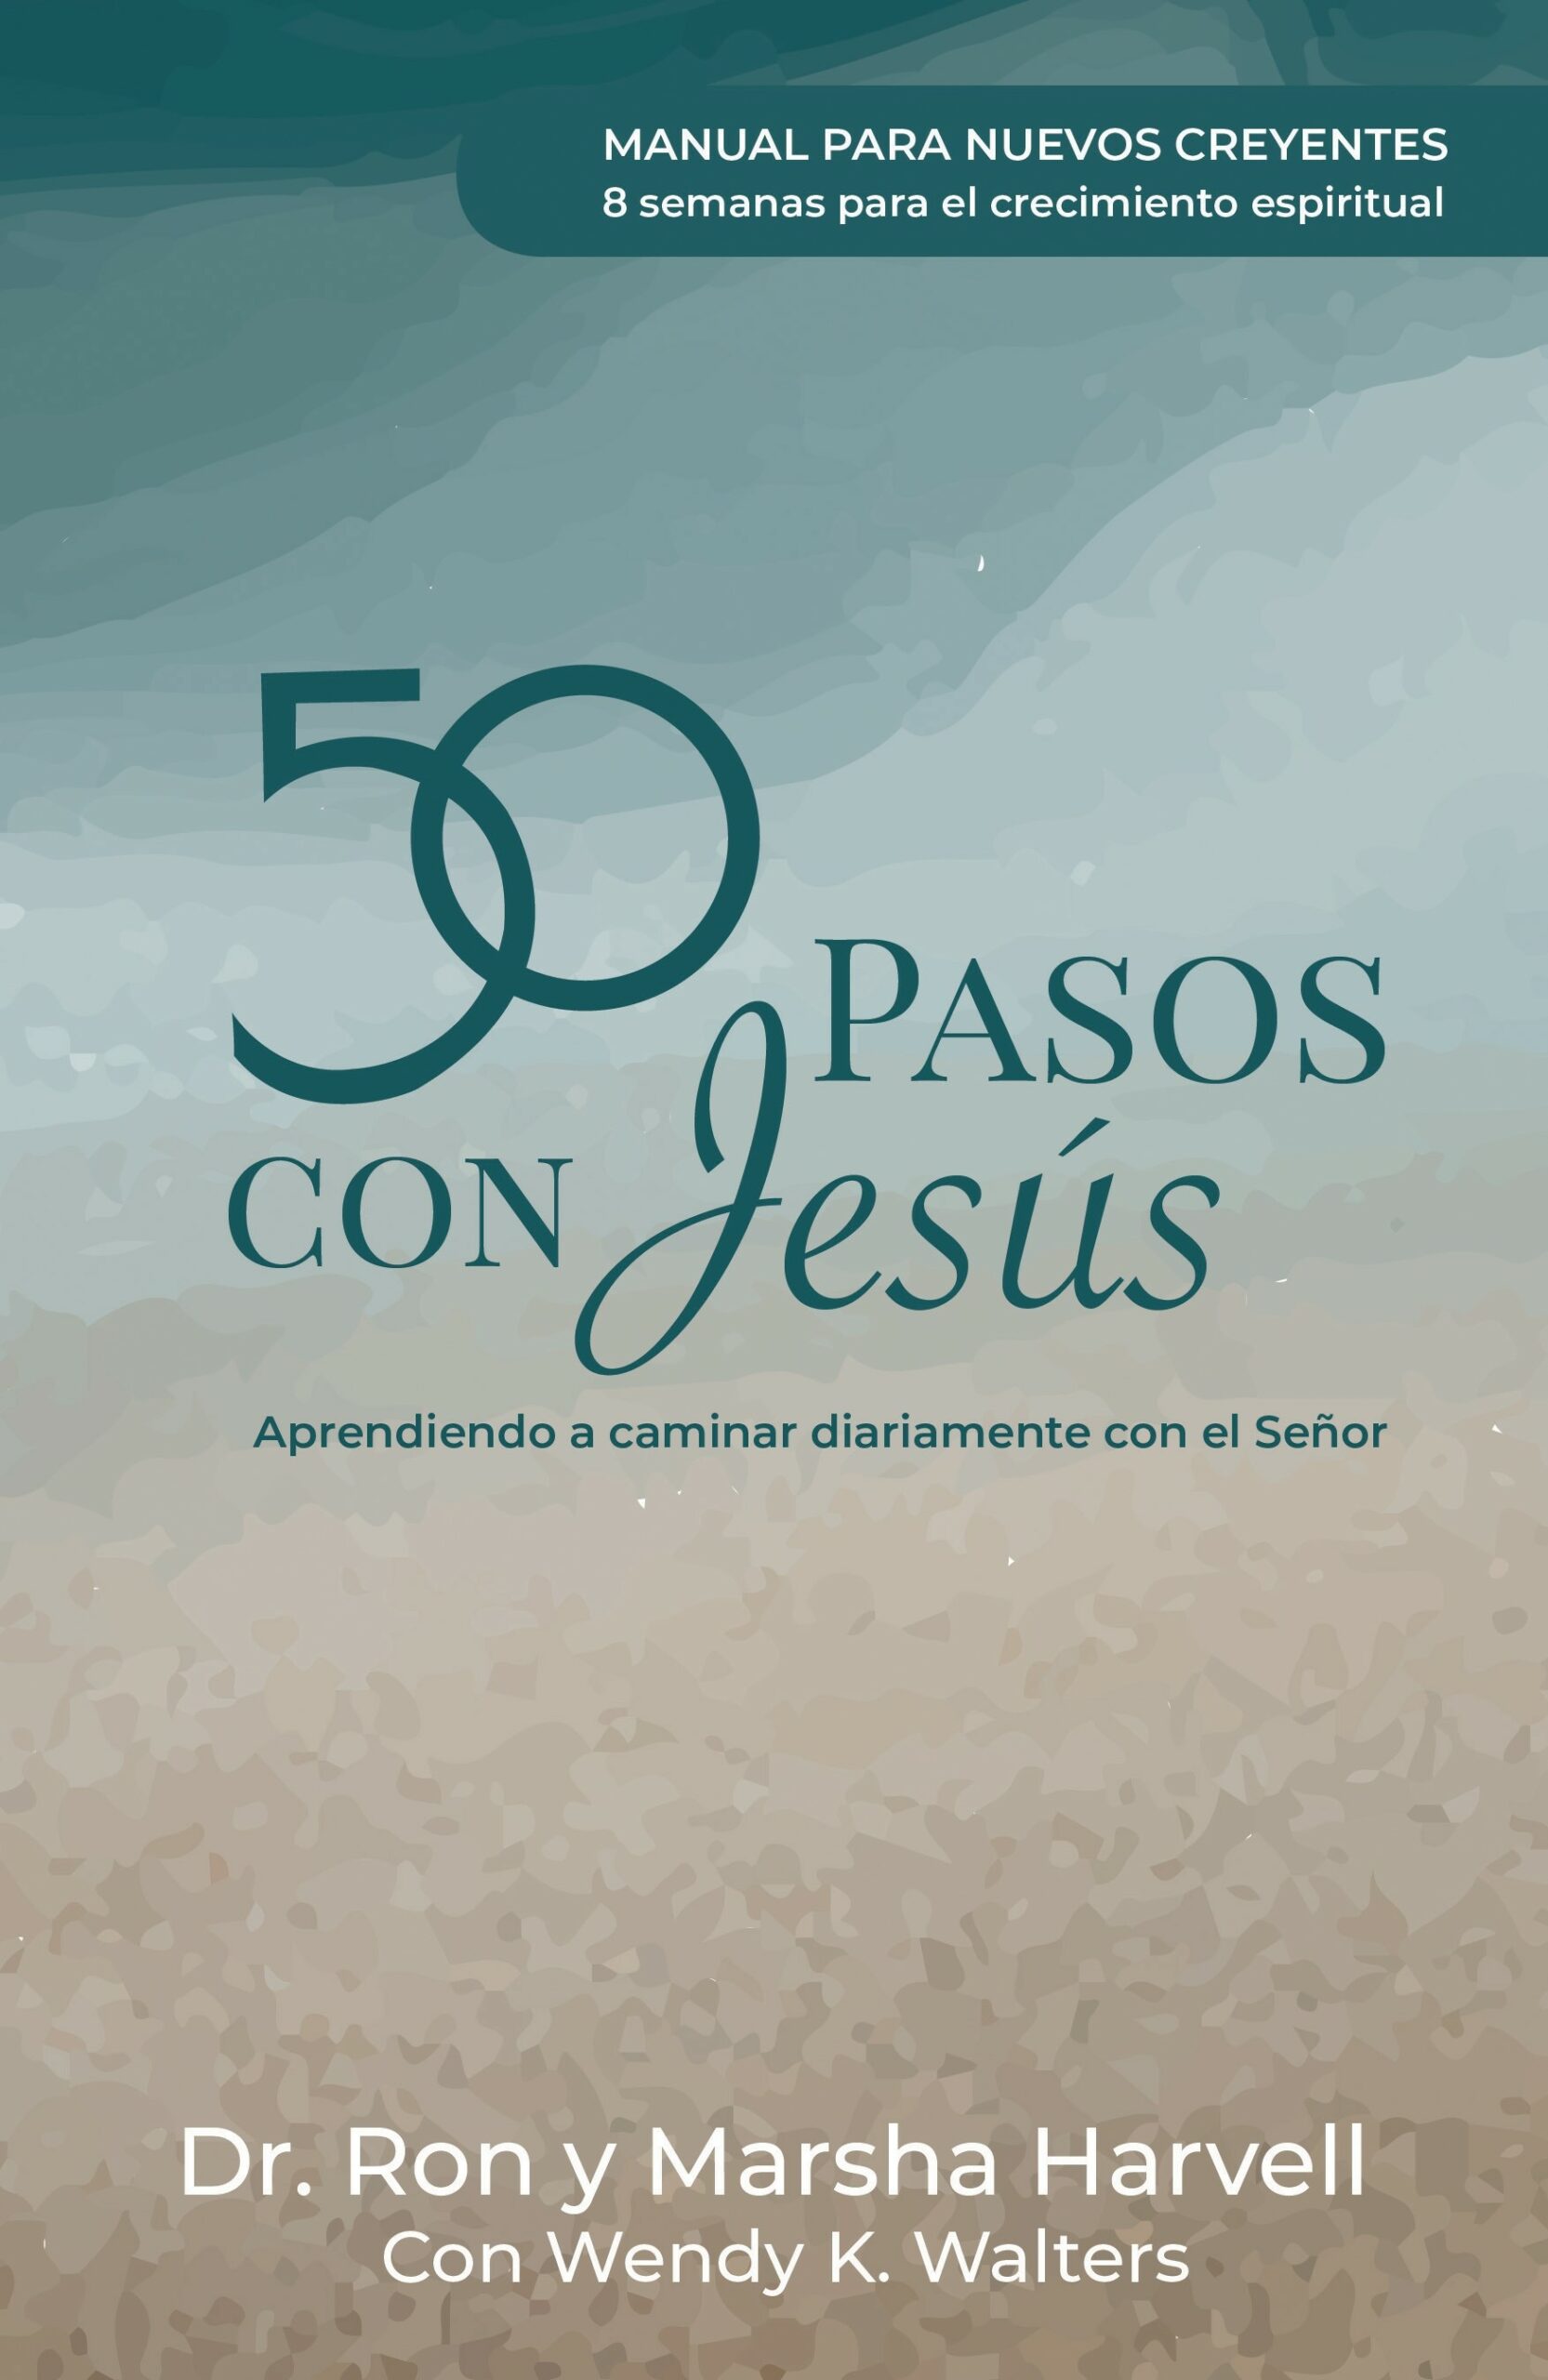 50 Pasos Con Jesús Manual Para Nuevos Creyentes Mi Devocional 3766